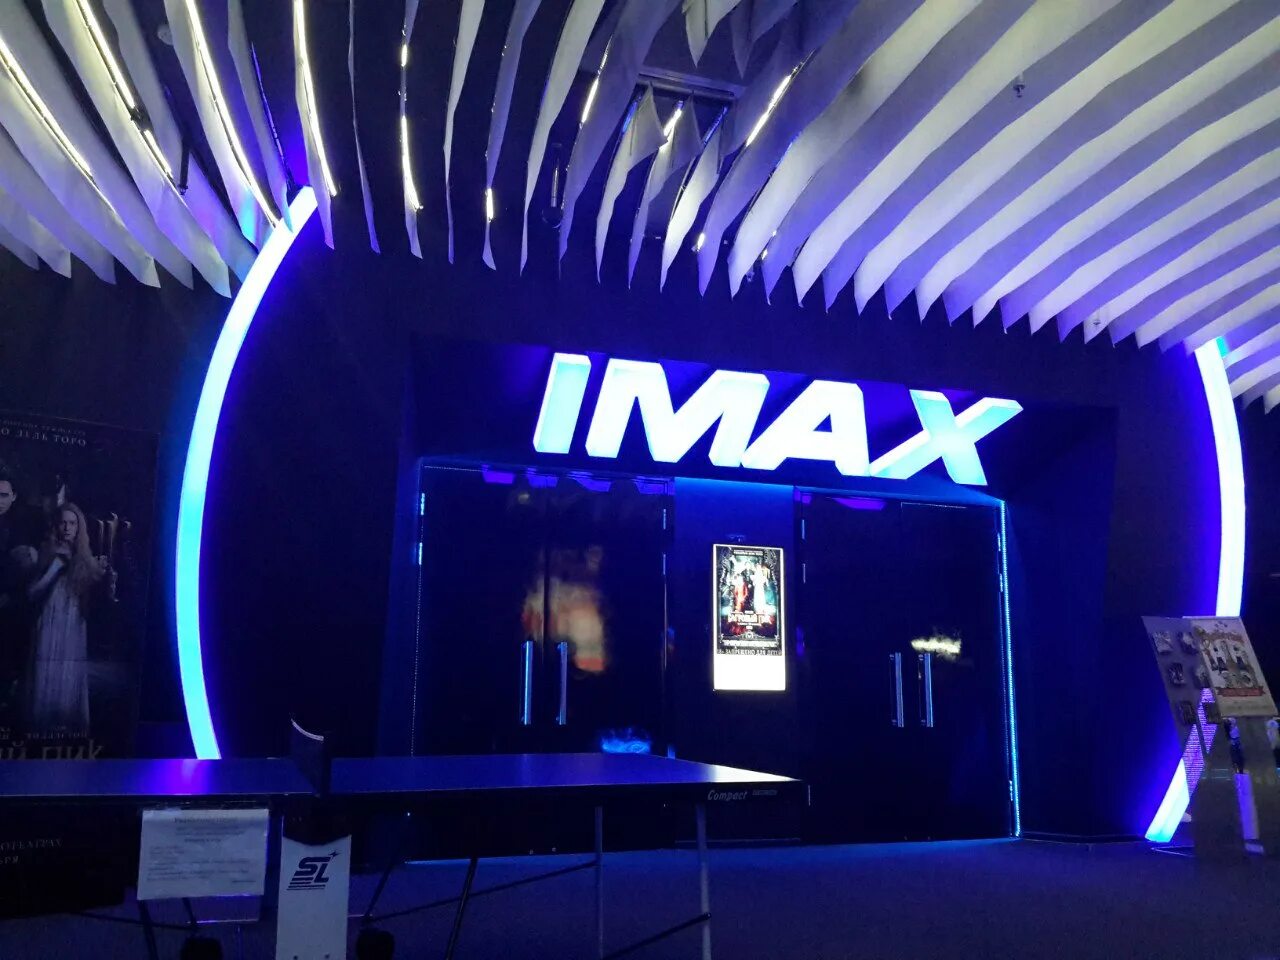 Аймакс кинотеатр в Москве. Аймакс кинотеатр в Москве самый большой. Nescafe IMAX кинотеатр Москва. Аймакс 3д Капитолий. Киносфера imax в тц капитолий